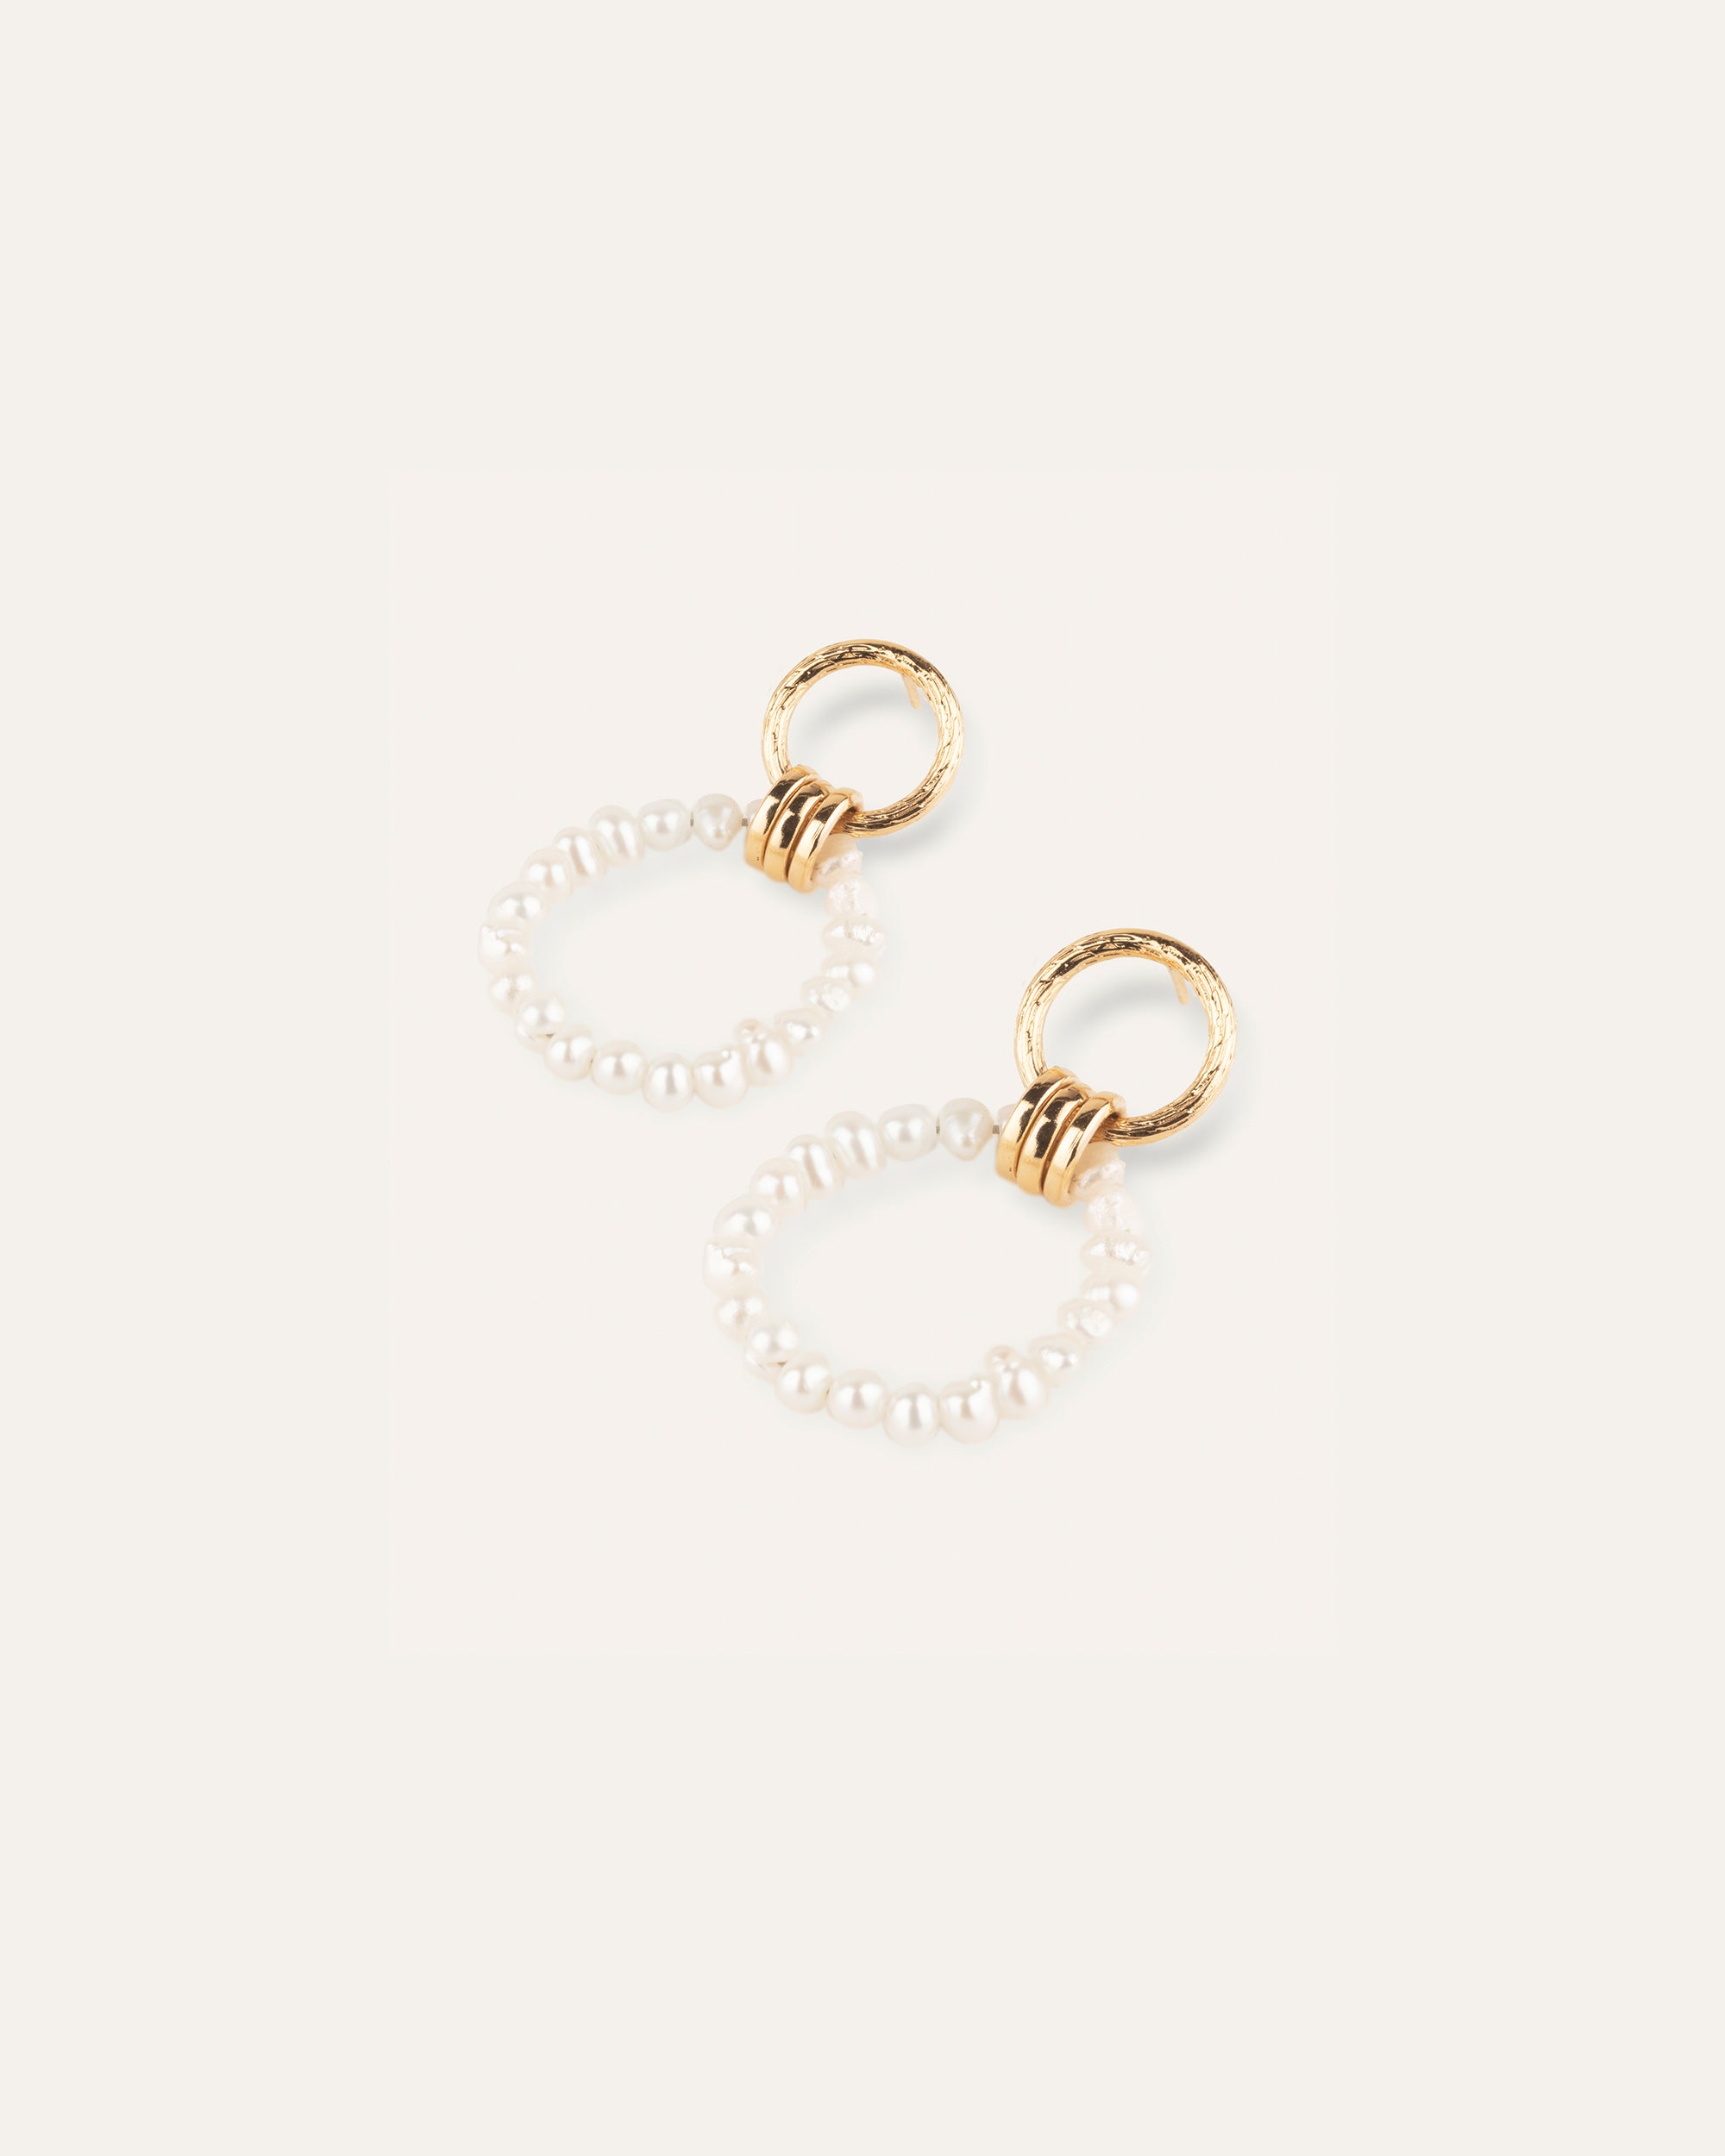 Boucles d'oreilles double anneaux avec des perles de culture en plaqué or 3 microns et made in France.